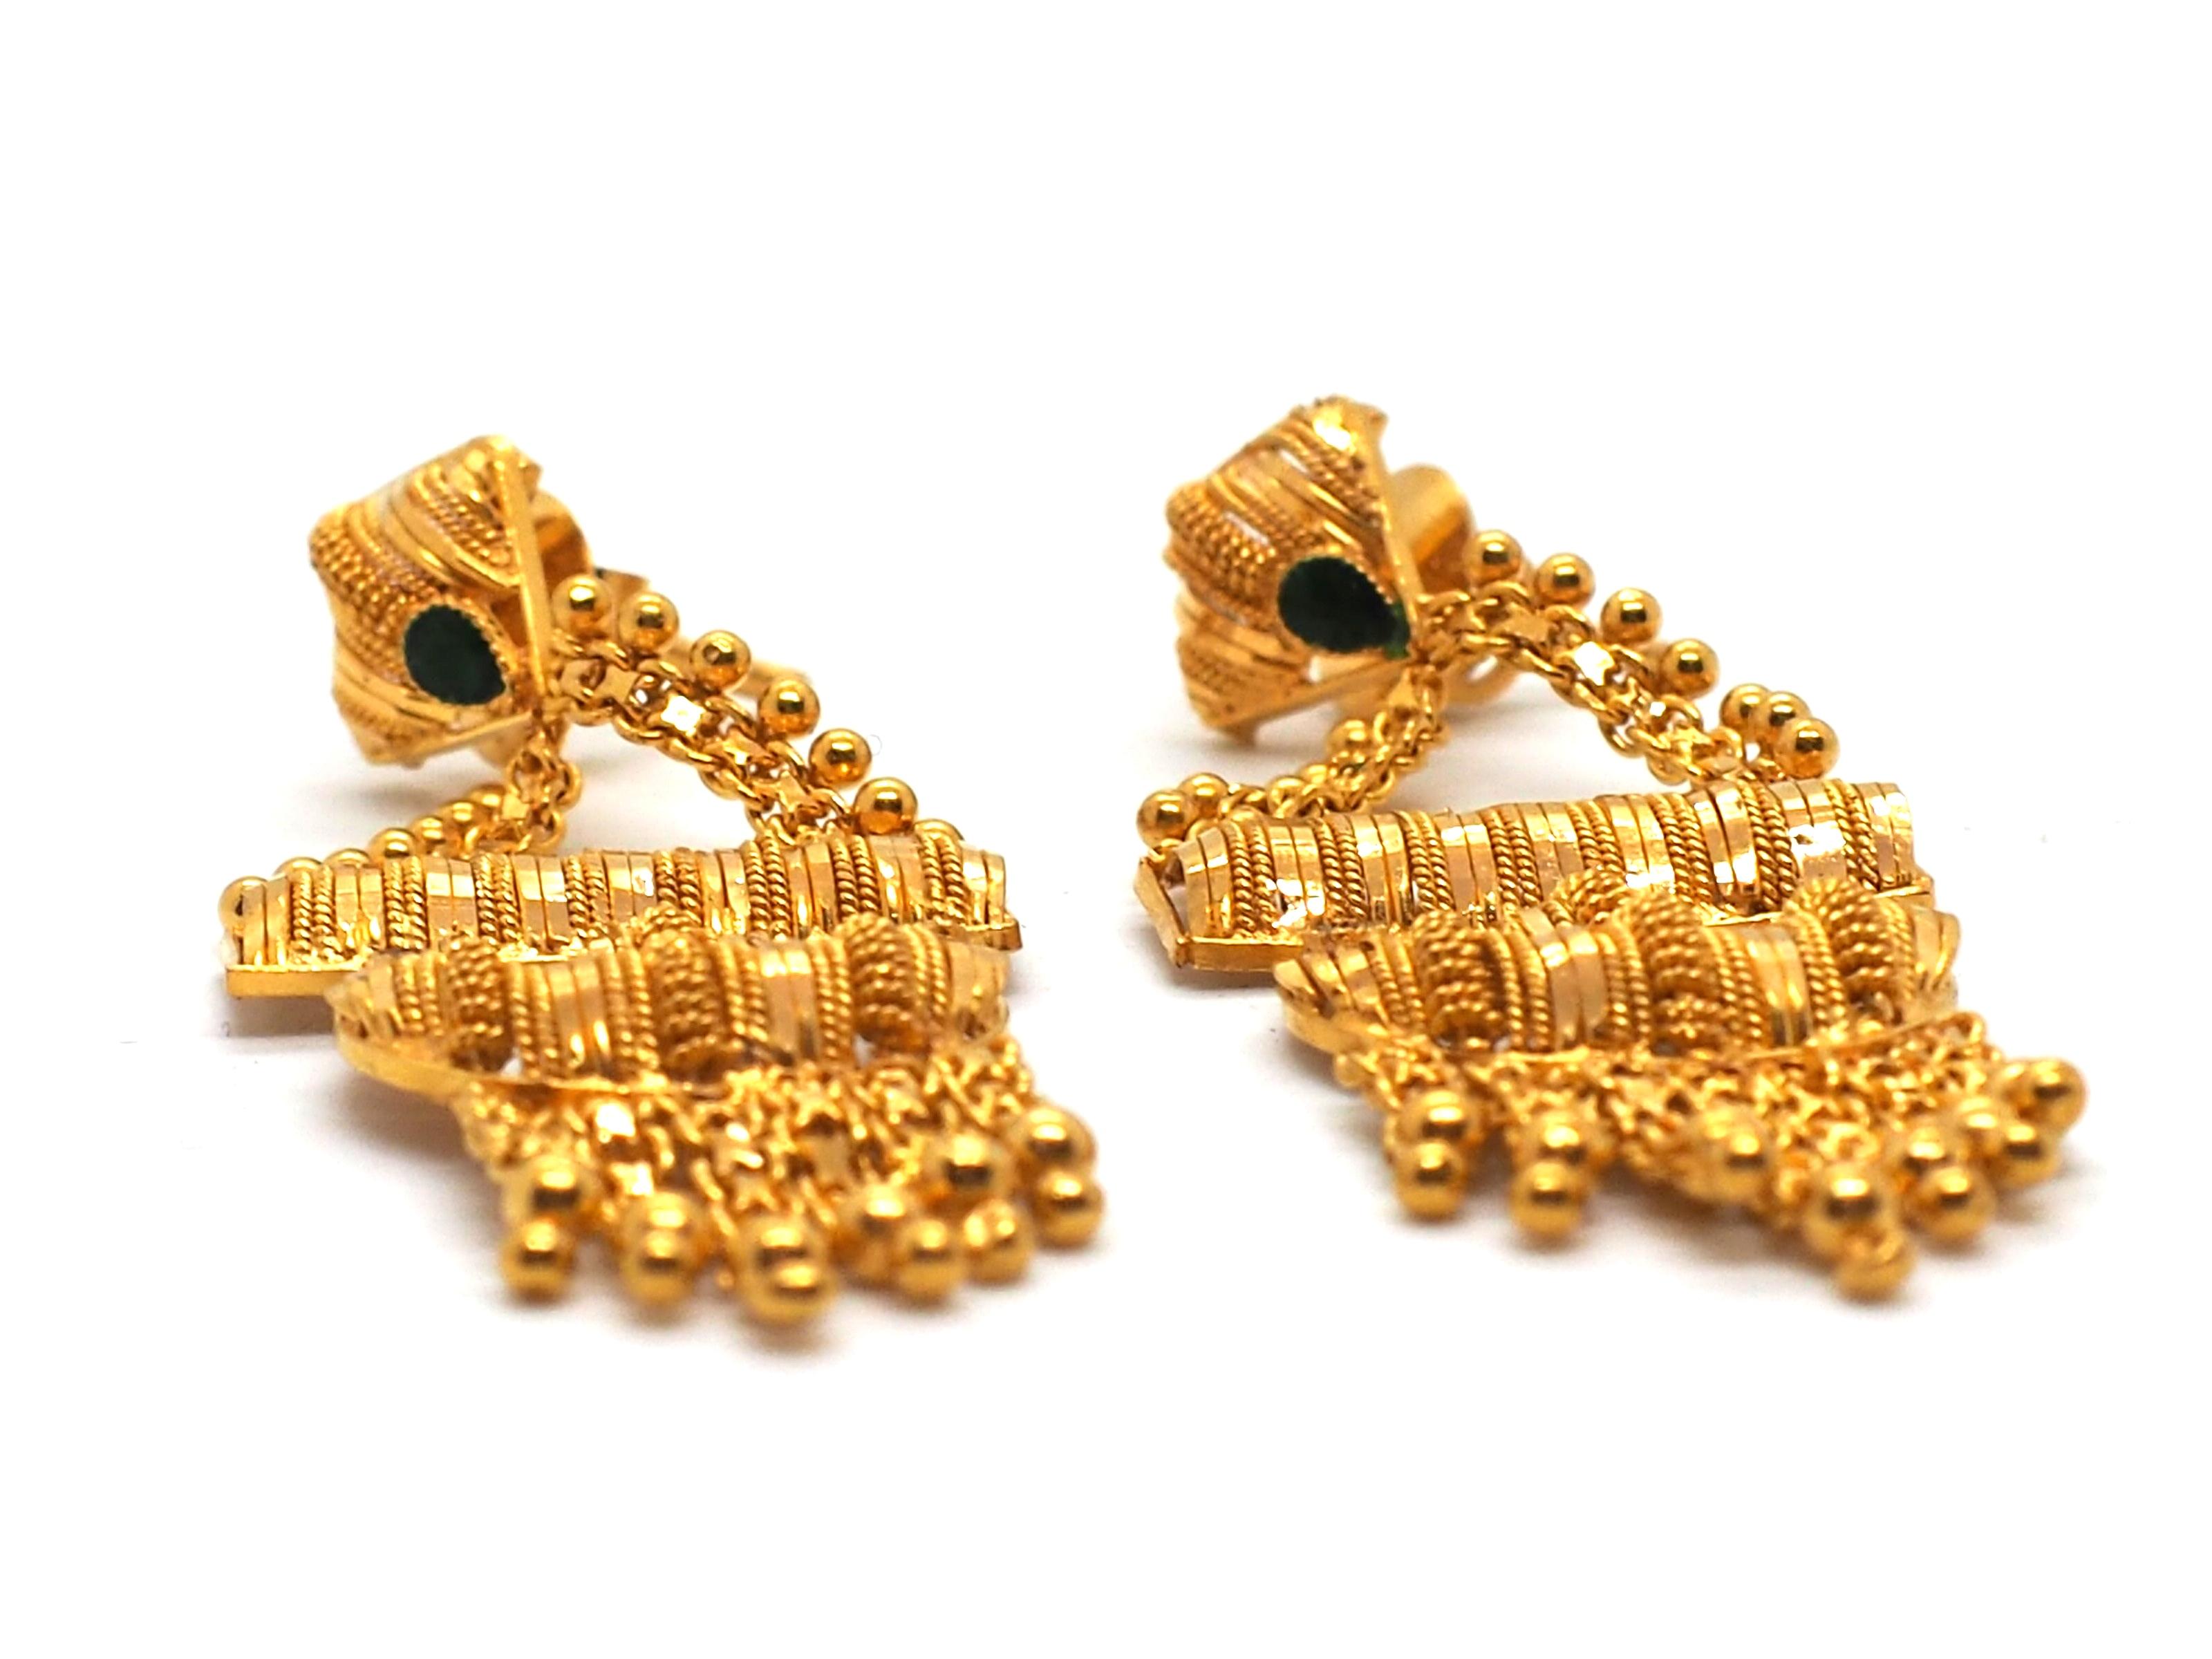 Glamour trifft auf Tradition: 21 Karat Kronleuchter-Ohrringe im indischen Stil.

Erstrahlen Sie in Eleganz mit unseren 21 Karat Kronleuchter-Ohrringen im indischen Stil. Diese exquisiten Ohrringe wiegen insgesamt 14 Gramm und verkörpern die